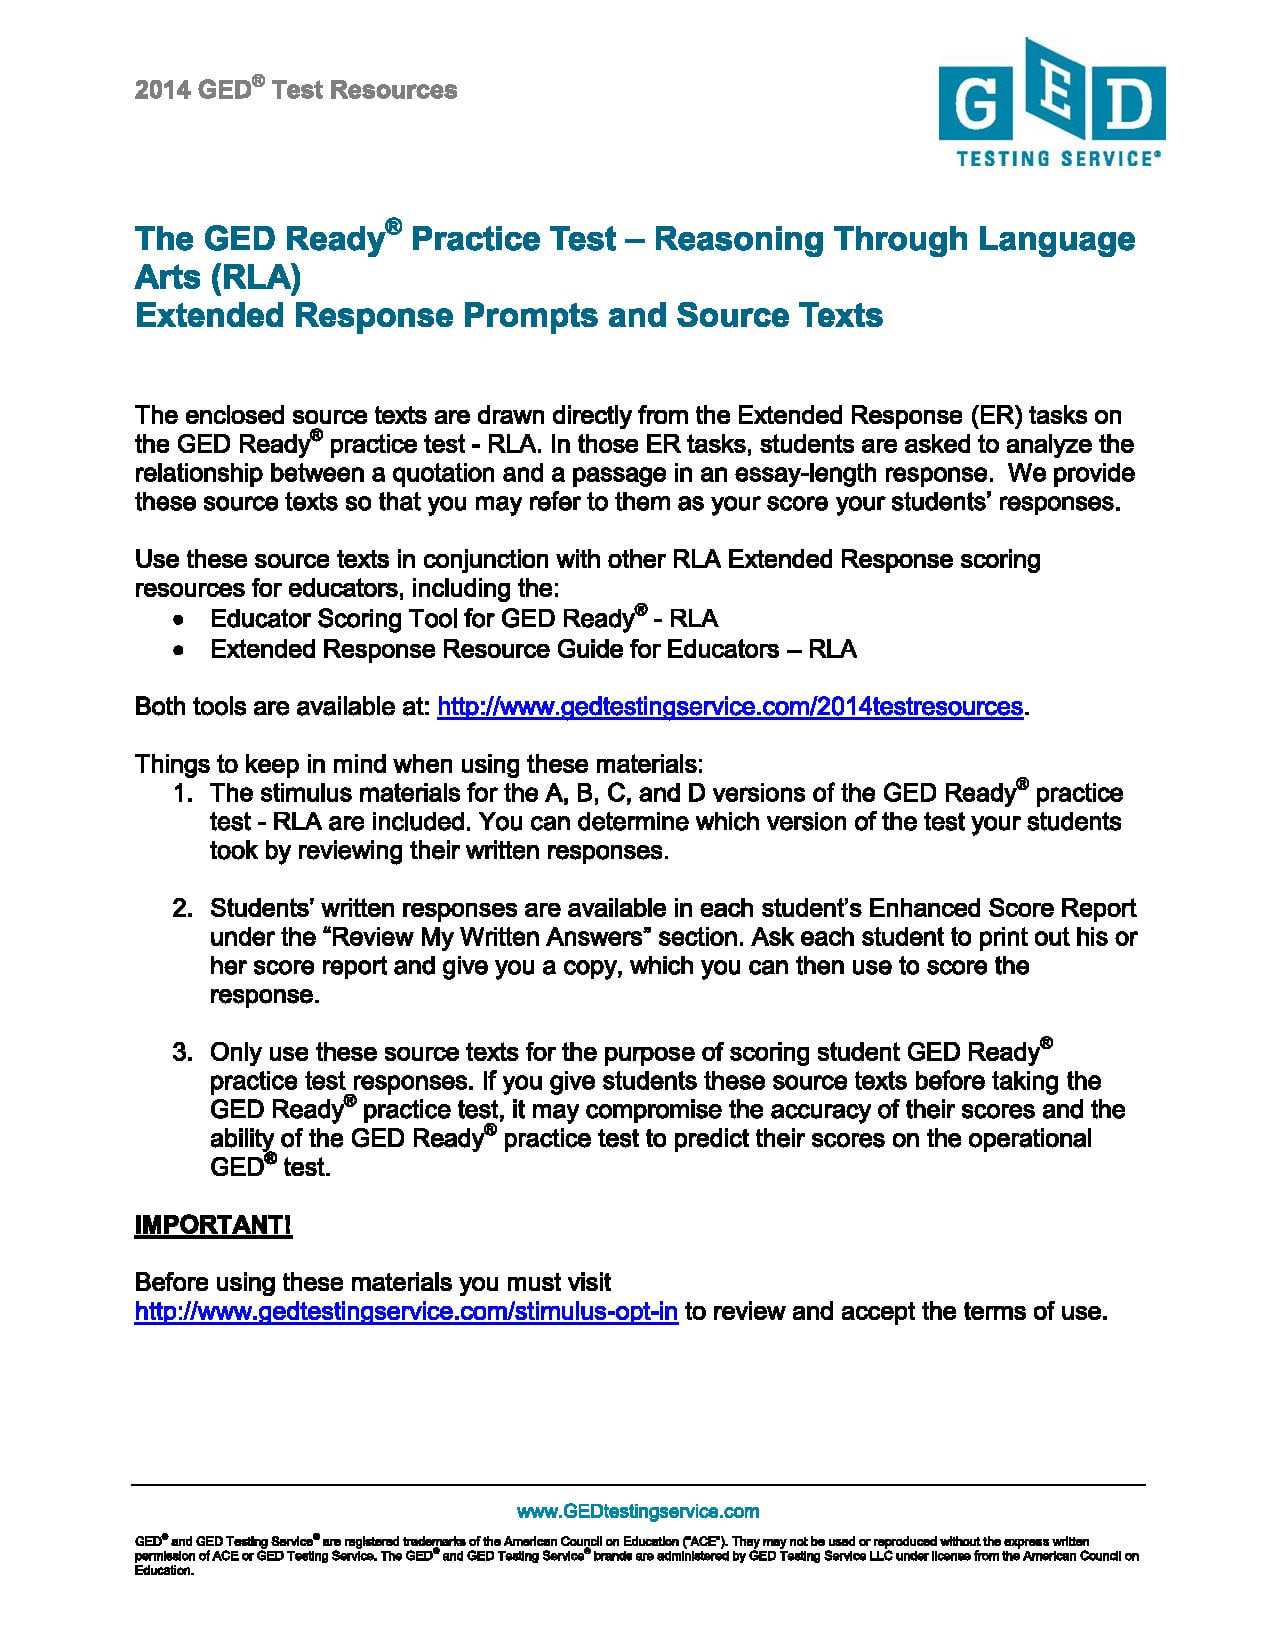 Free Printable Ged Worksheets or Printable Ged Practice Test with Answers Elegant Printable Ged